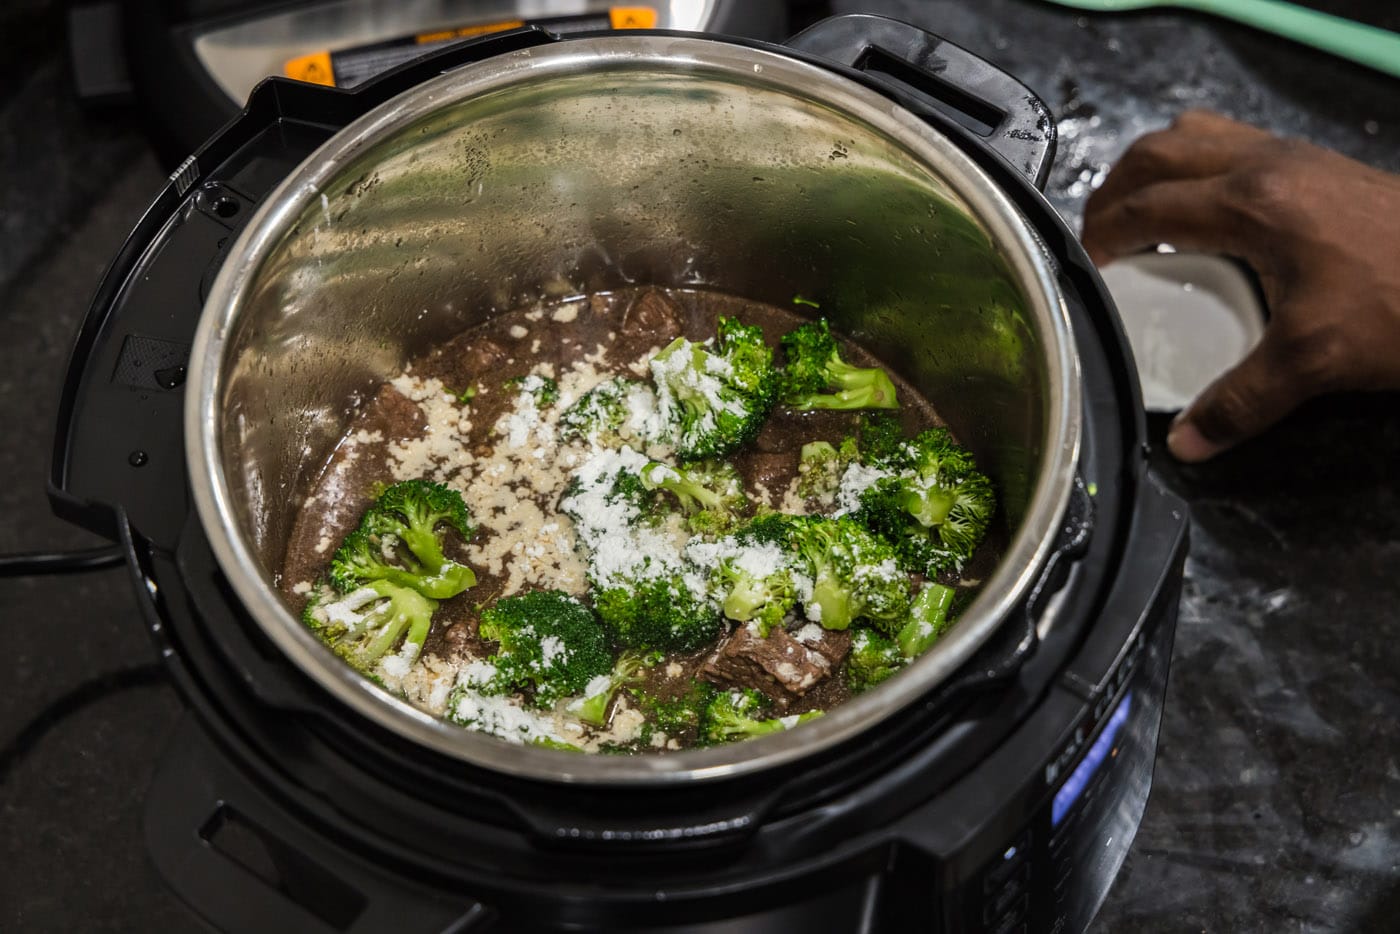 cornstarch sprinkled over broccoli in insant pot